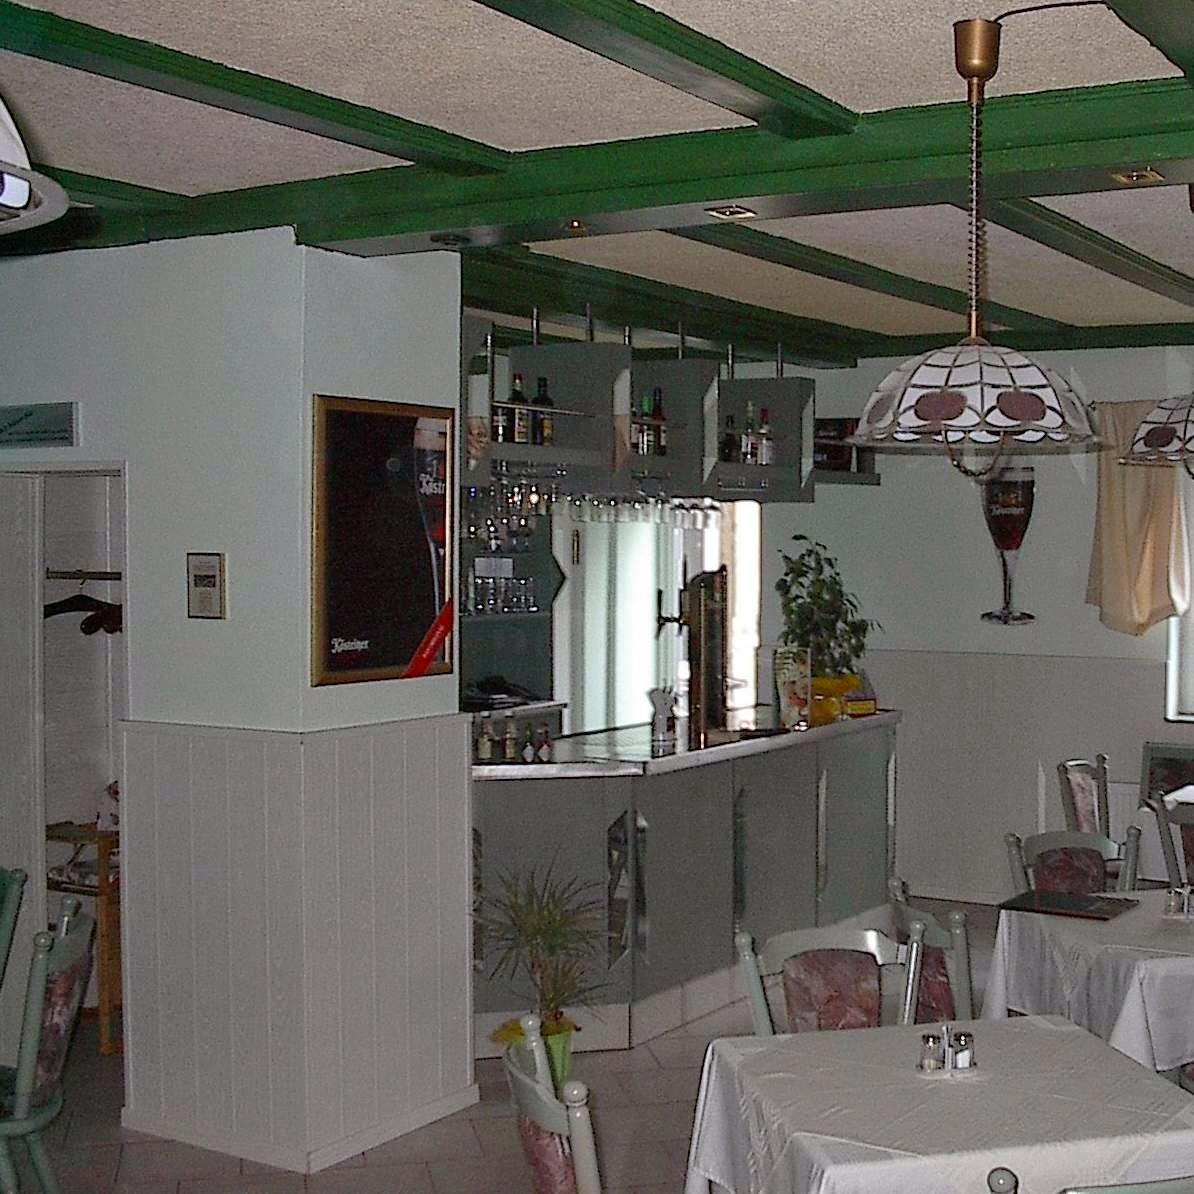 Restaurant "Gaststätte & Pension Waldfrieden Neudorf - Kretscham-Rothensehma am Kammwanderweg ÜN ab 20€ pP" in Sehmatal